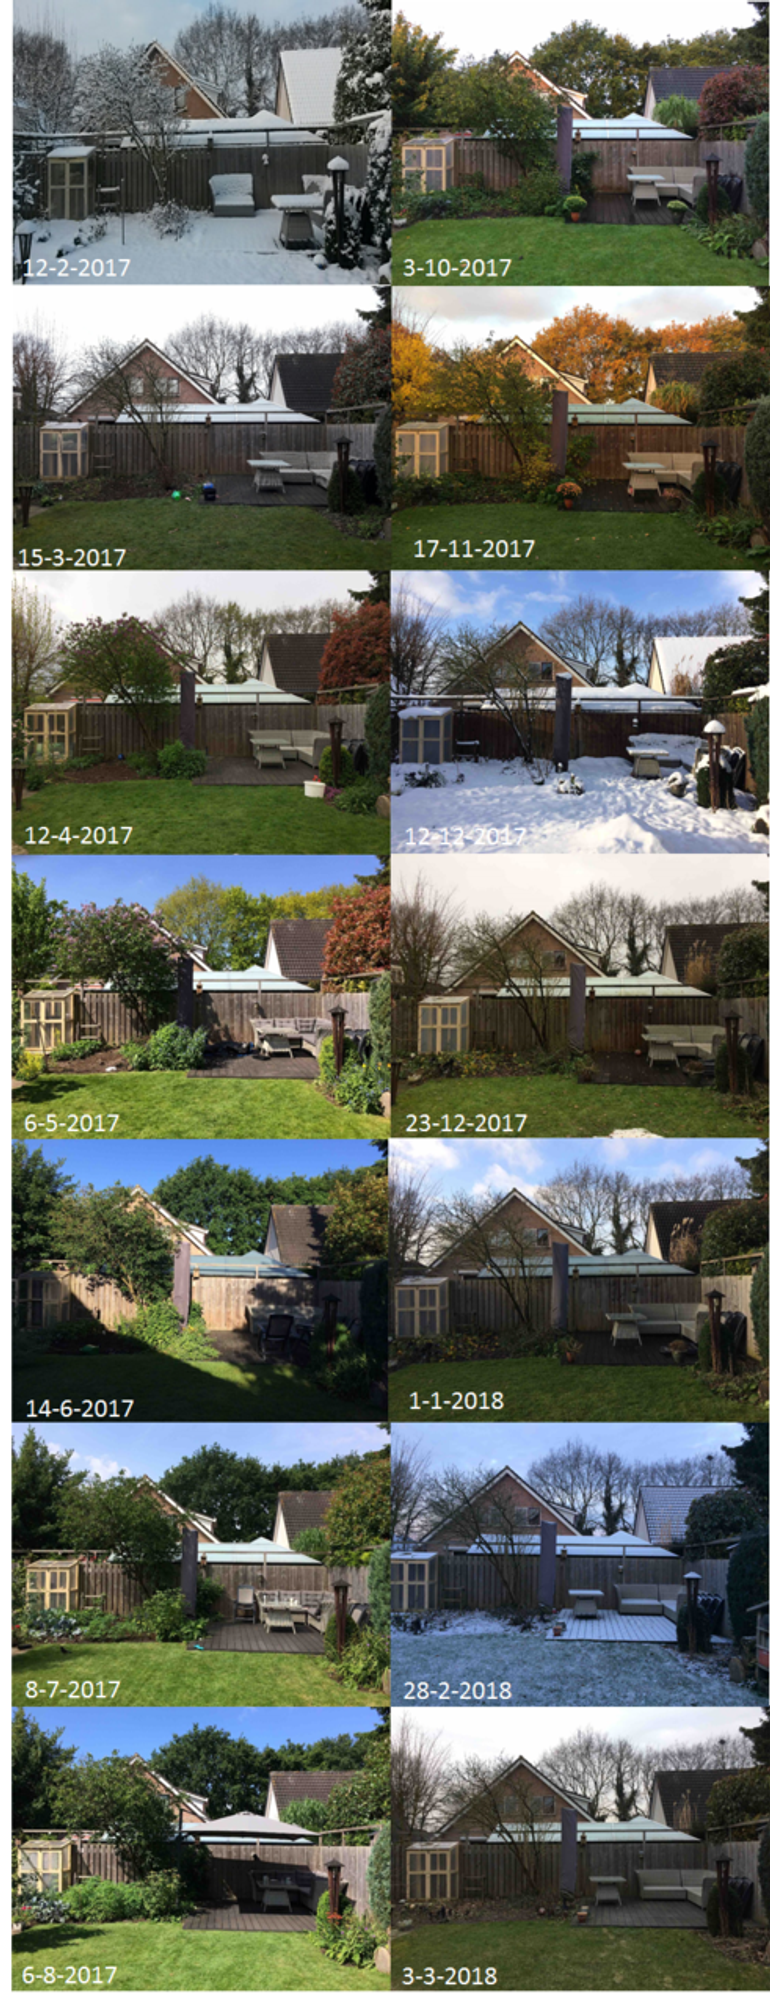 Selectie van GrowApp-foto’s uit de time-lapse video van het gazon in mijn achtertuin